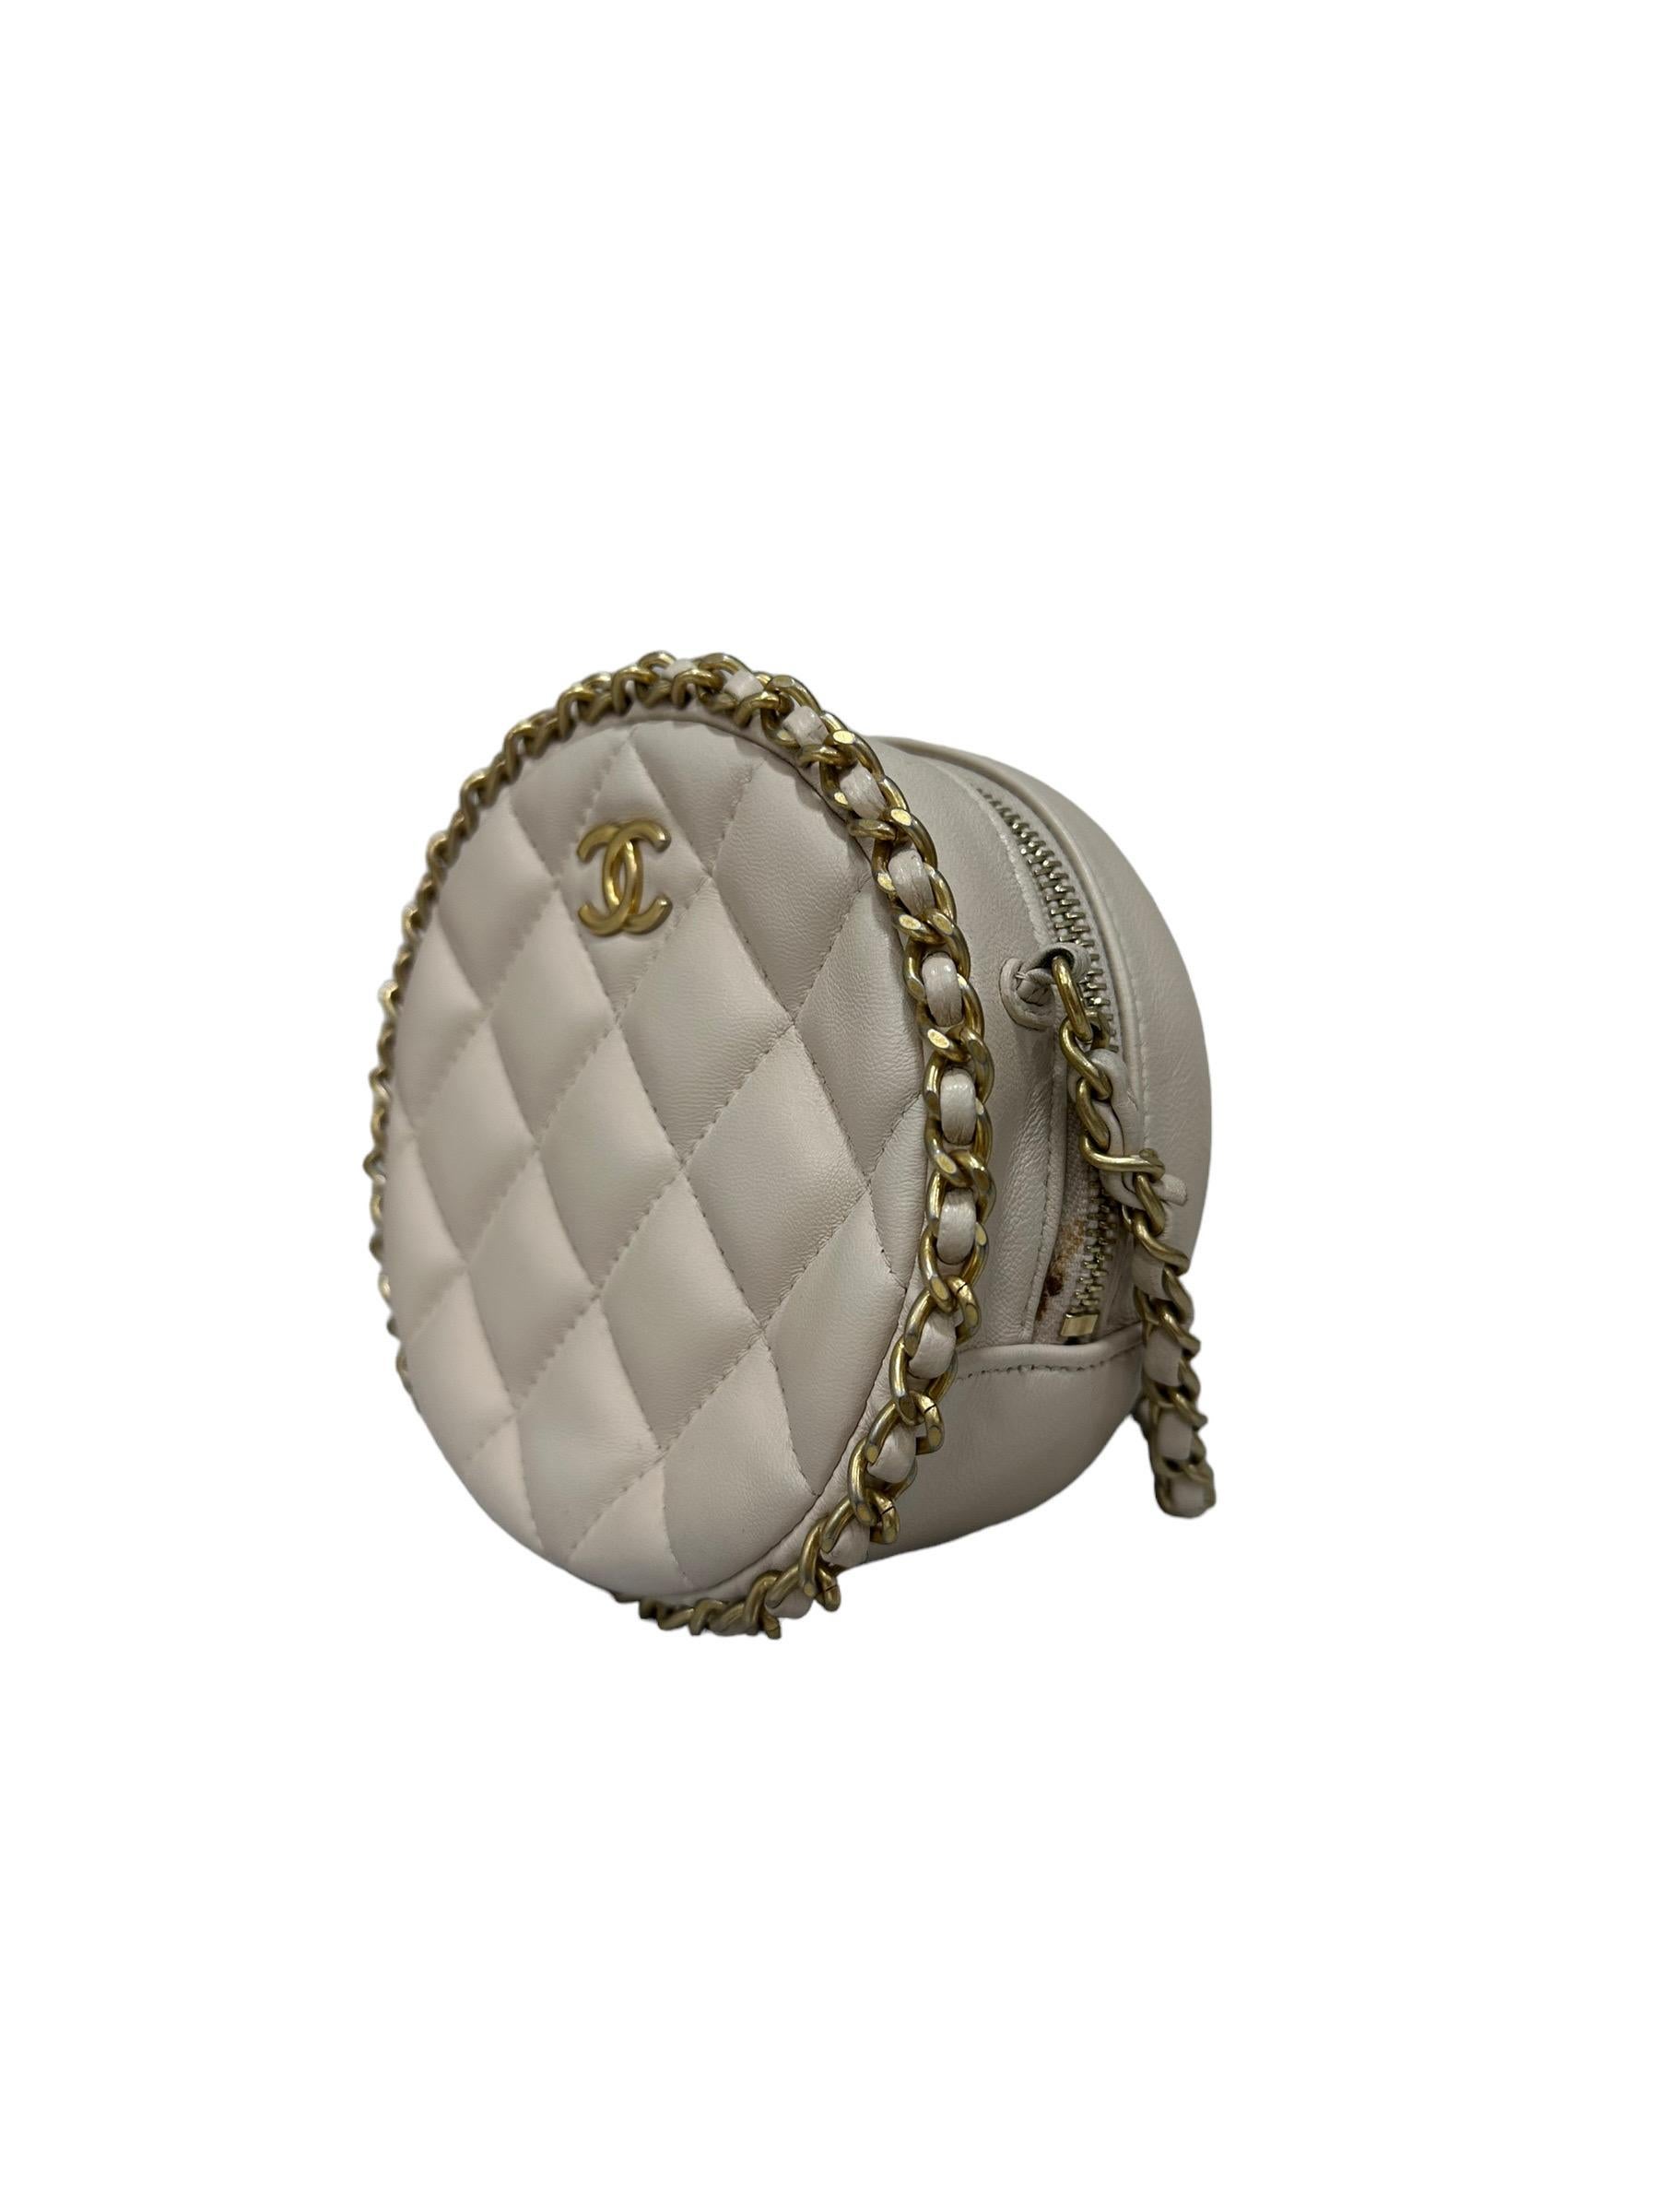 Borsa firmata Chanel, modello Round Bag, realizzata in pelle trapuntata beige e hardware dorati. Munita di tracolla in pelle e catena intrecciata per indossare la borsa a spalla e a tracolla. Internamente rivestita in pelle beige, capiente per